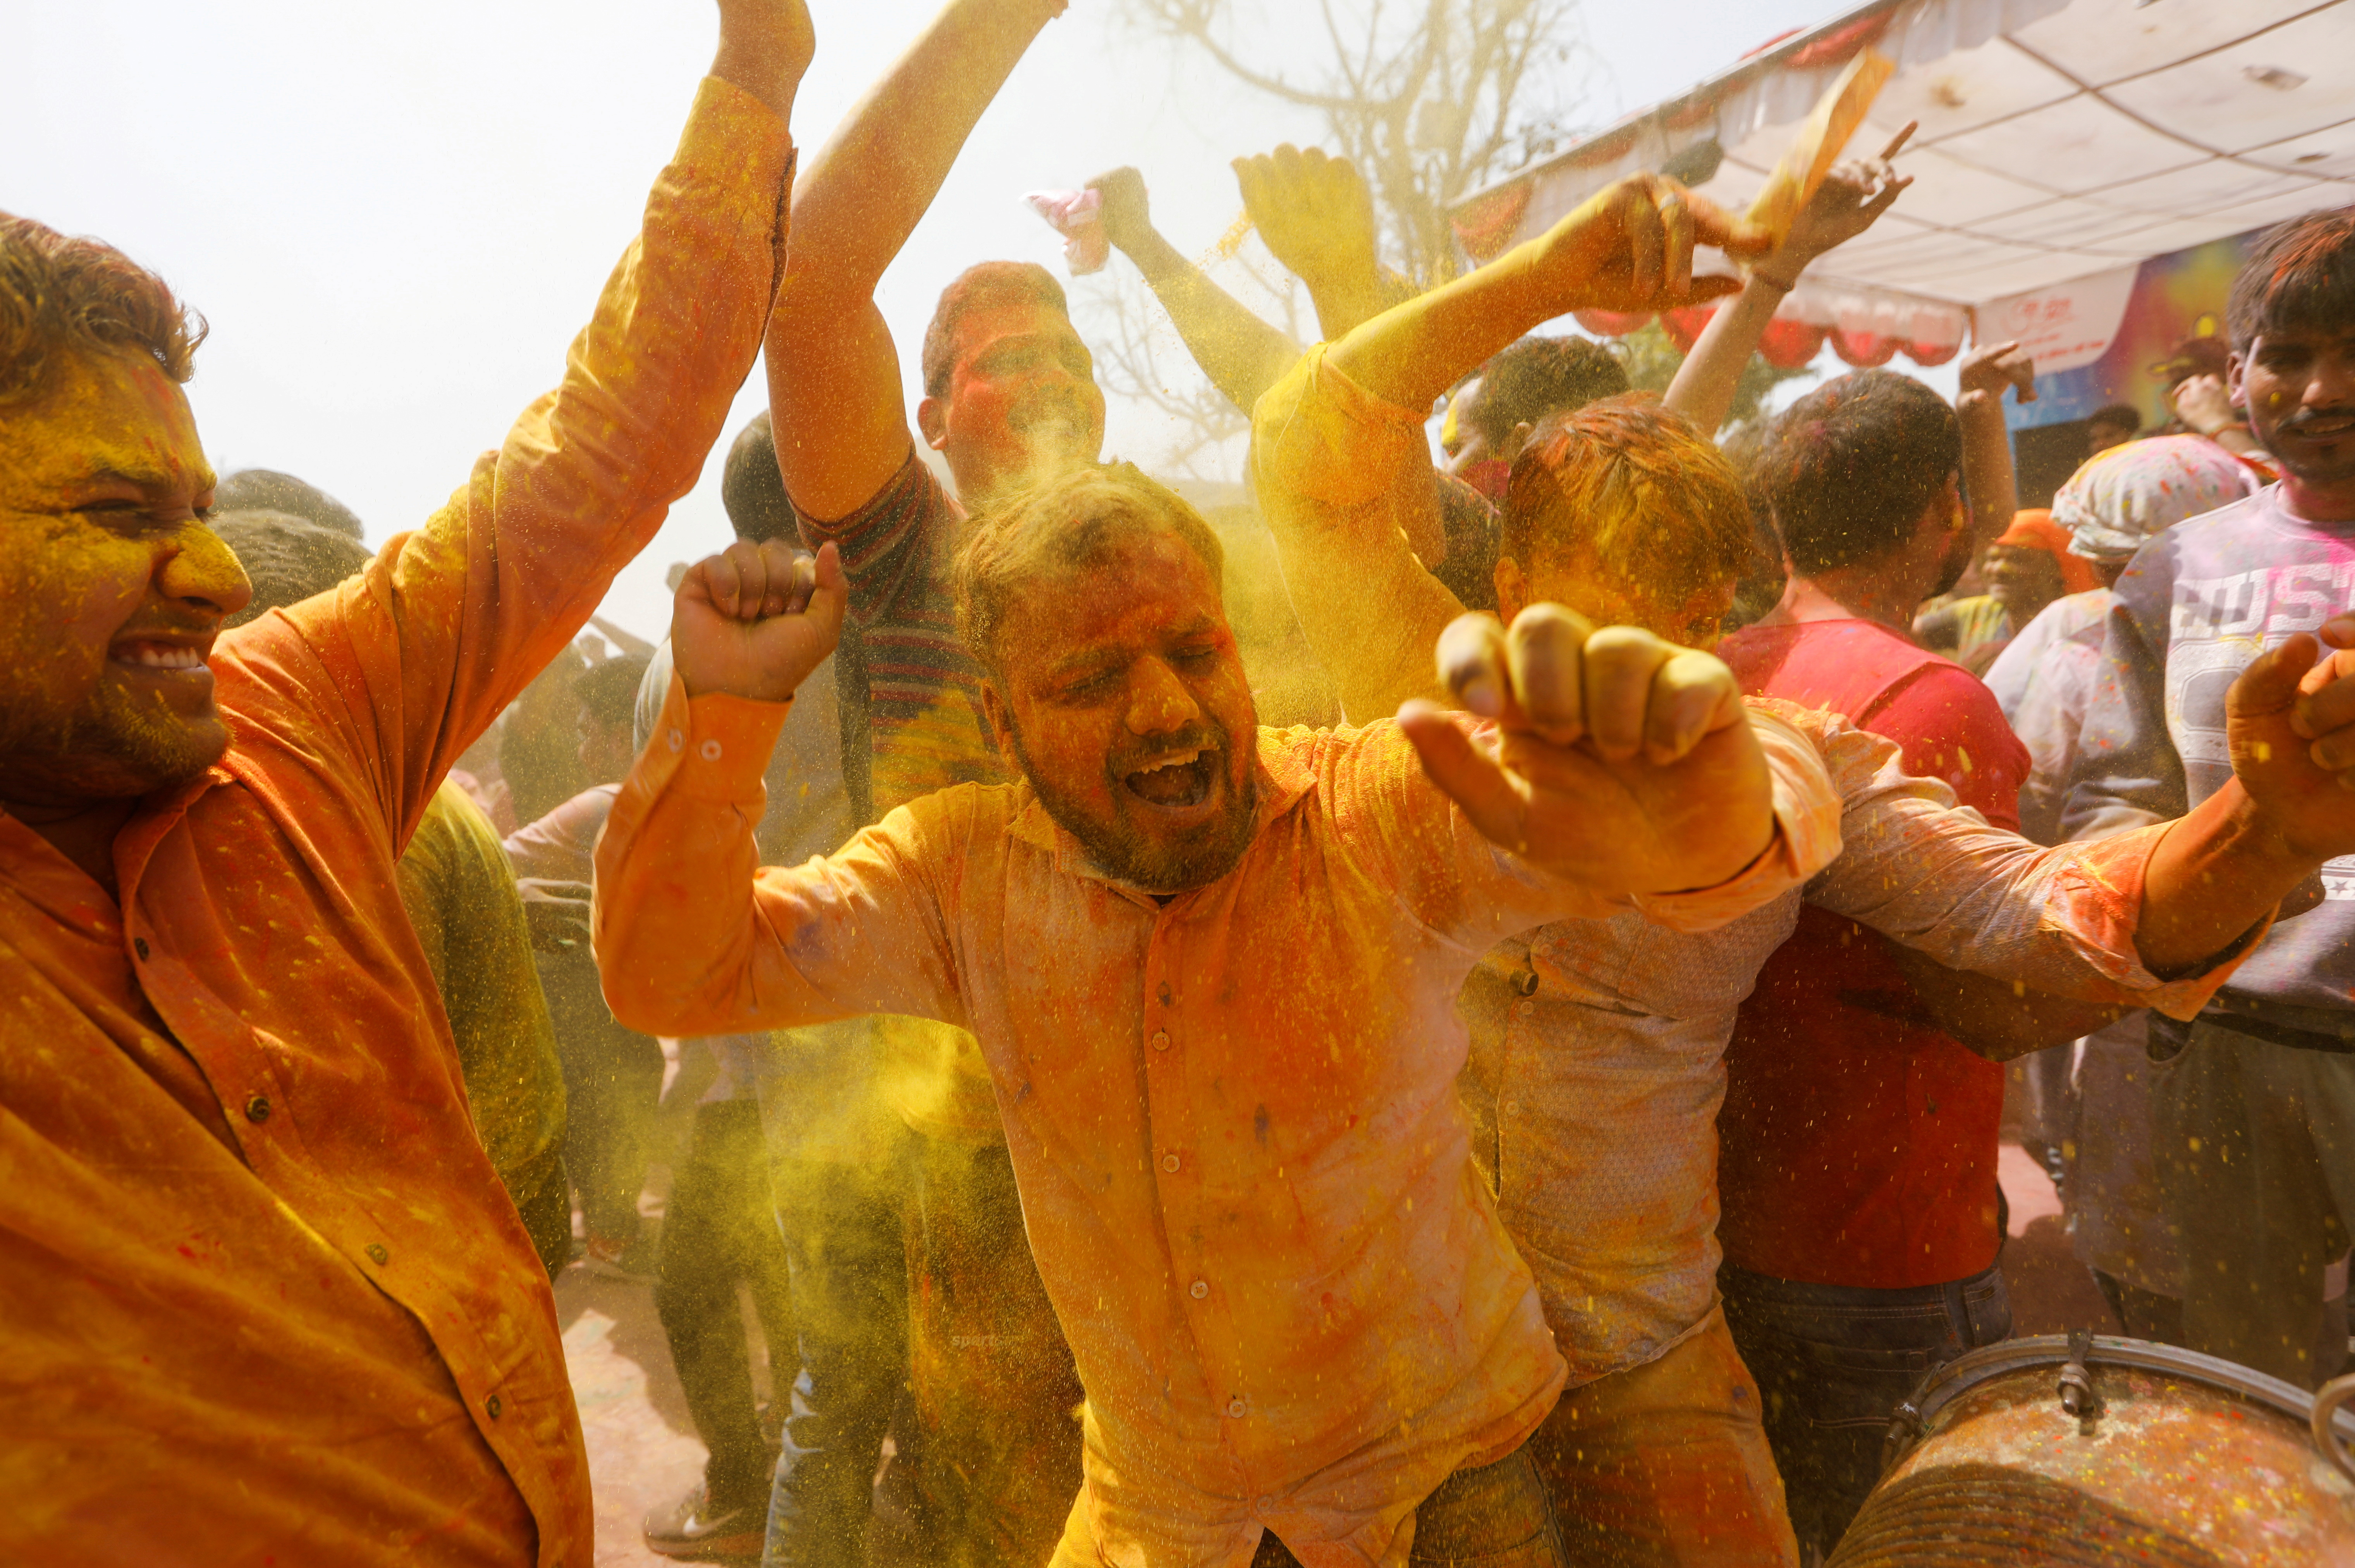 Новости холе. Холи — Индуистский фестиваль весны. Фестиваль красок Холи в Индии. Праздник красок Холи в Индии.